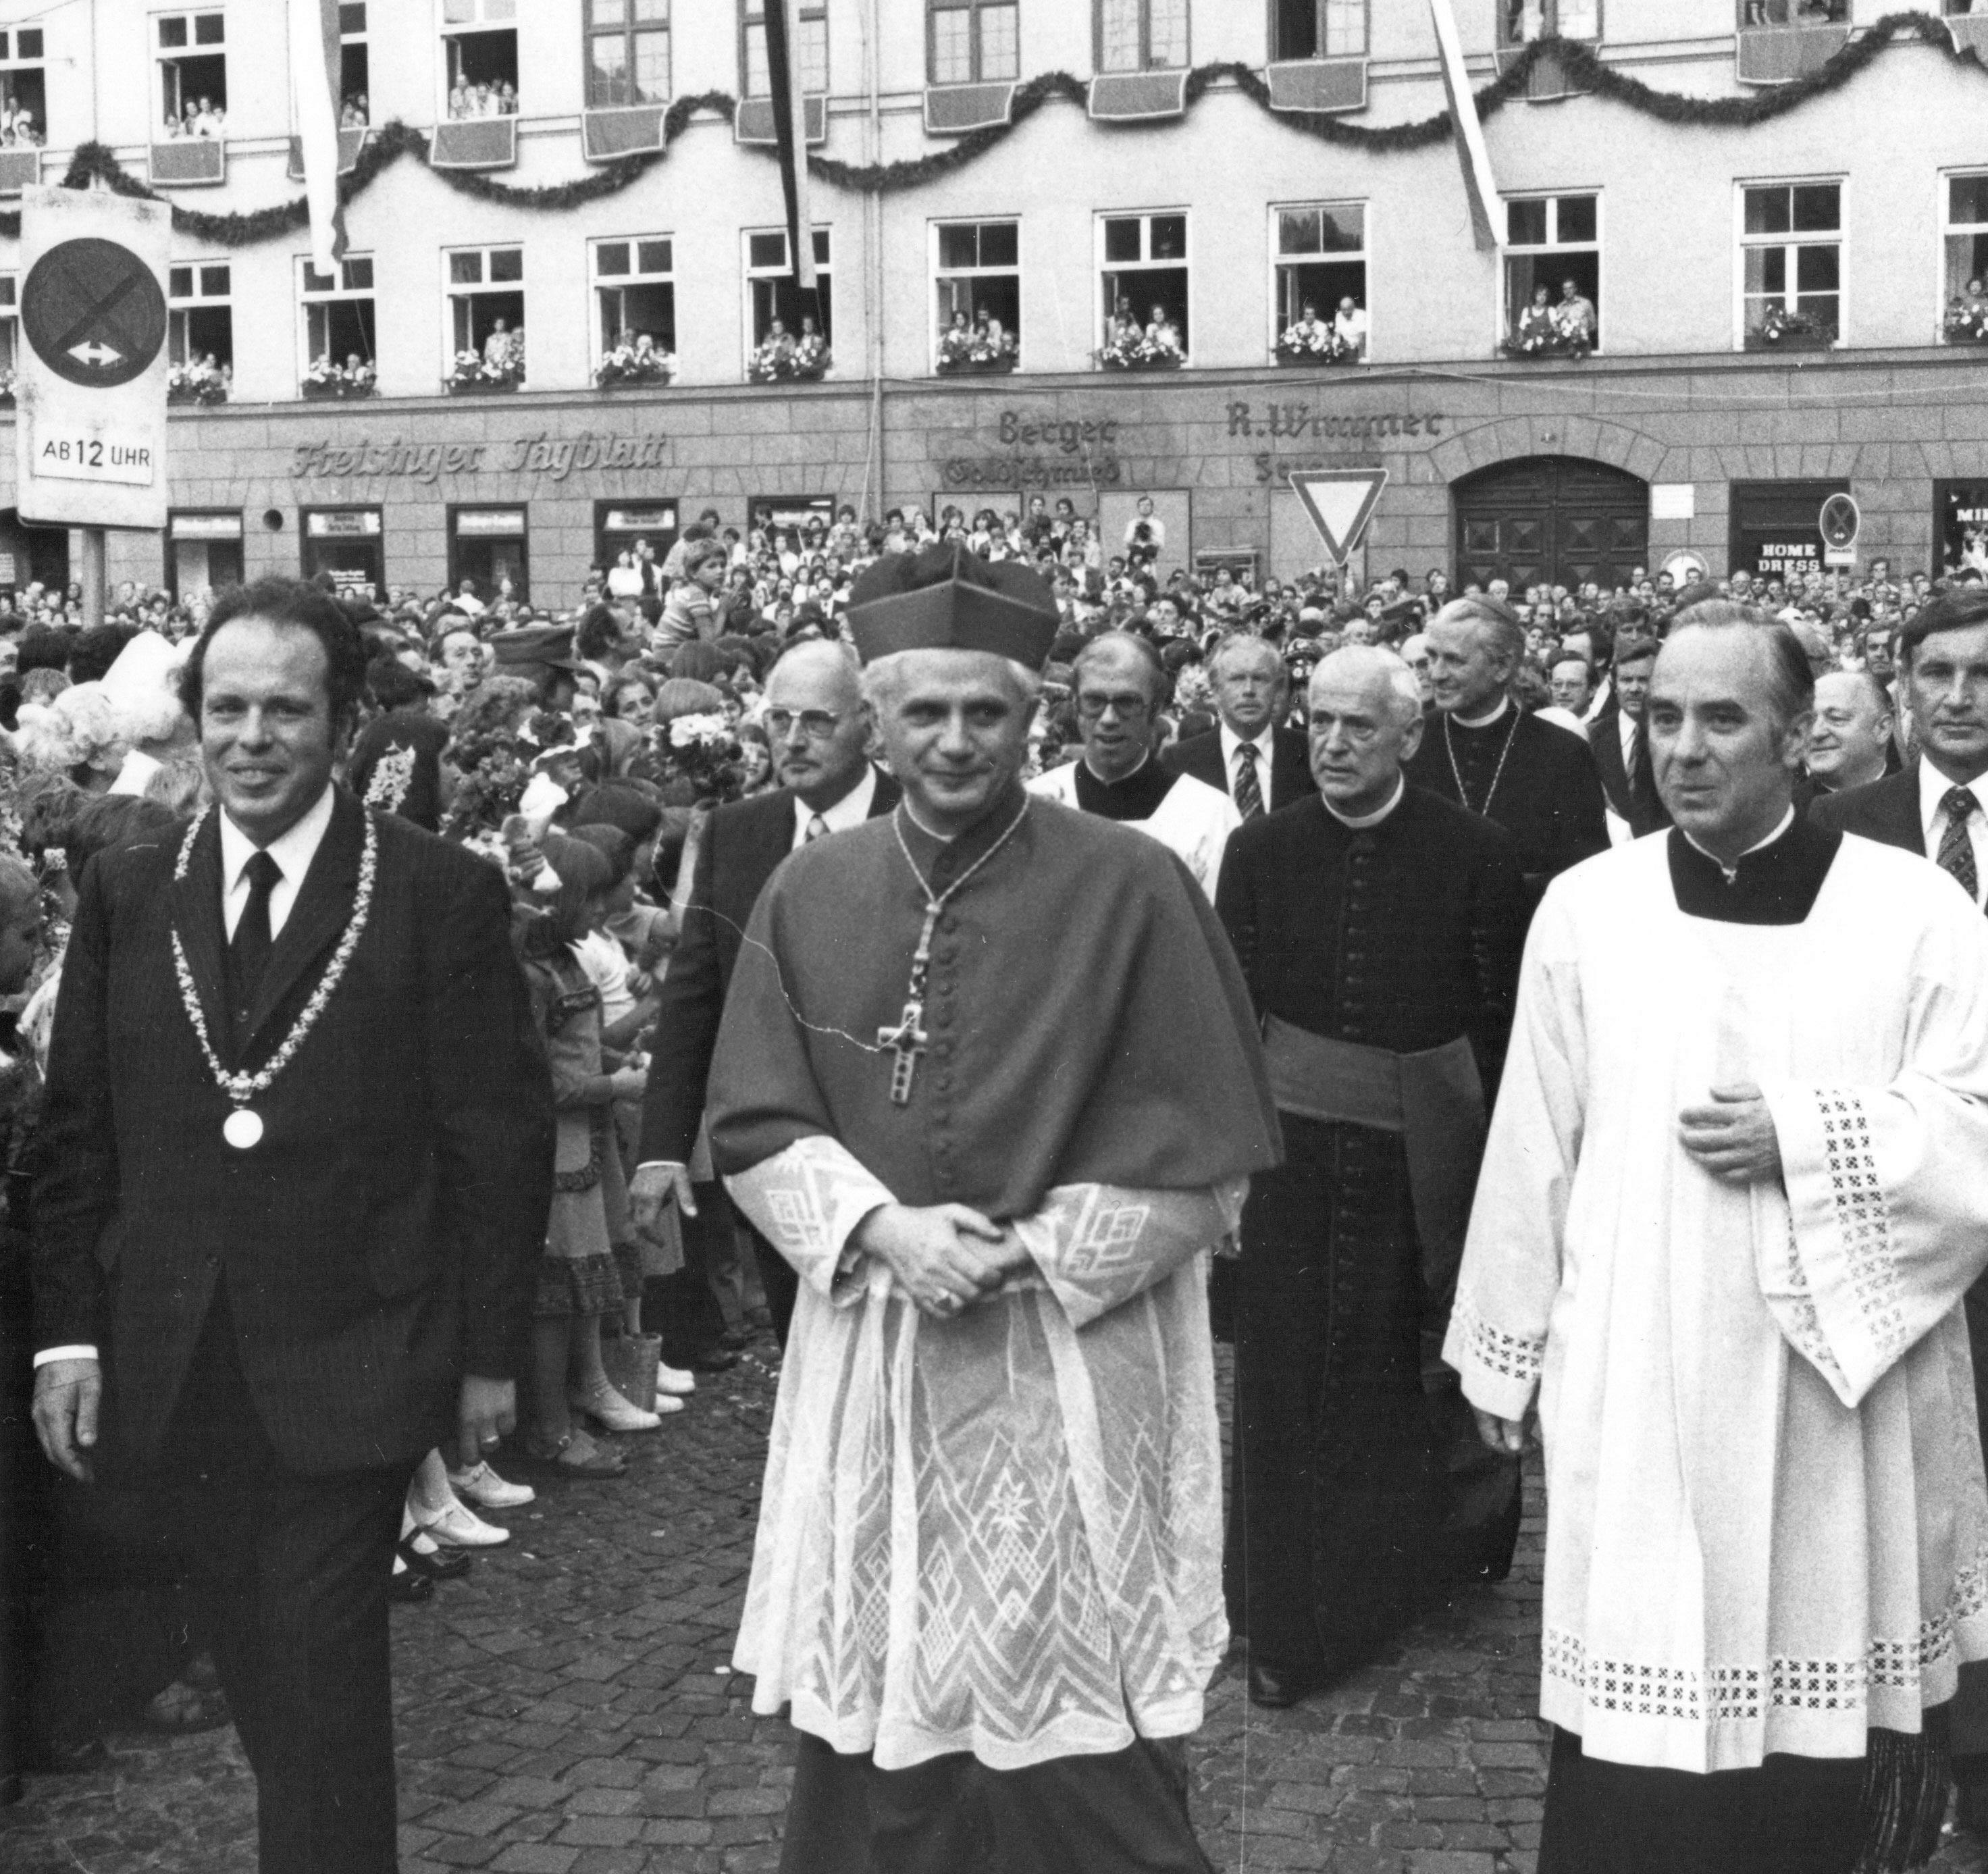 Begrussung Des Neuen Erzbischofs Joseph Ratzinger 1977 Fink Das Magazin Aus Freising